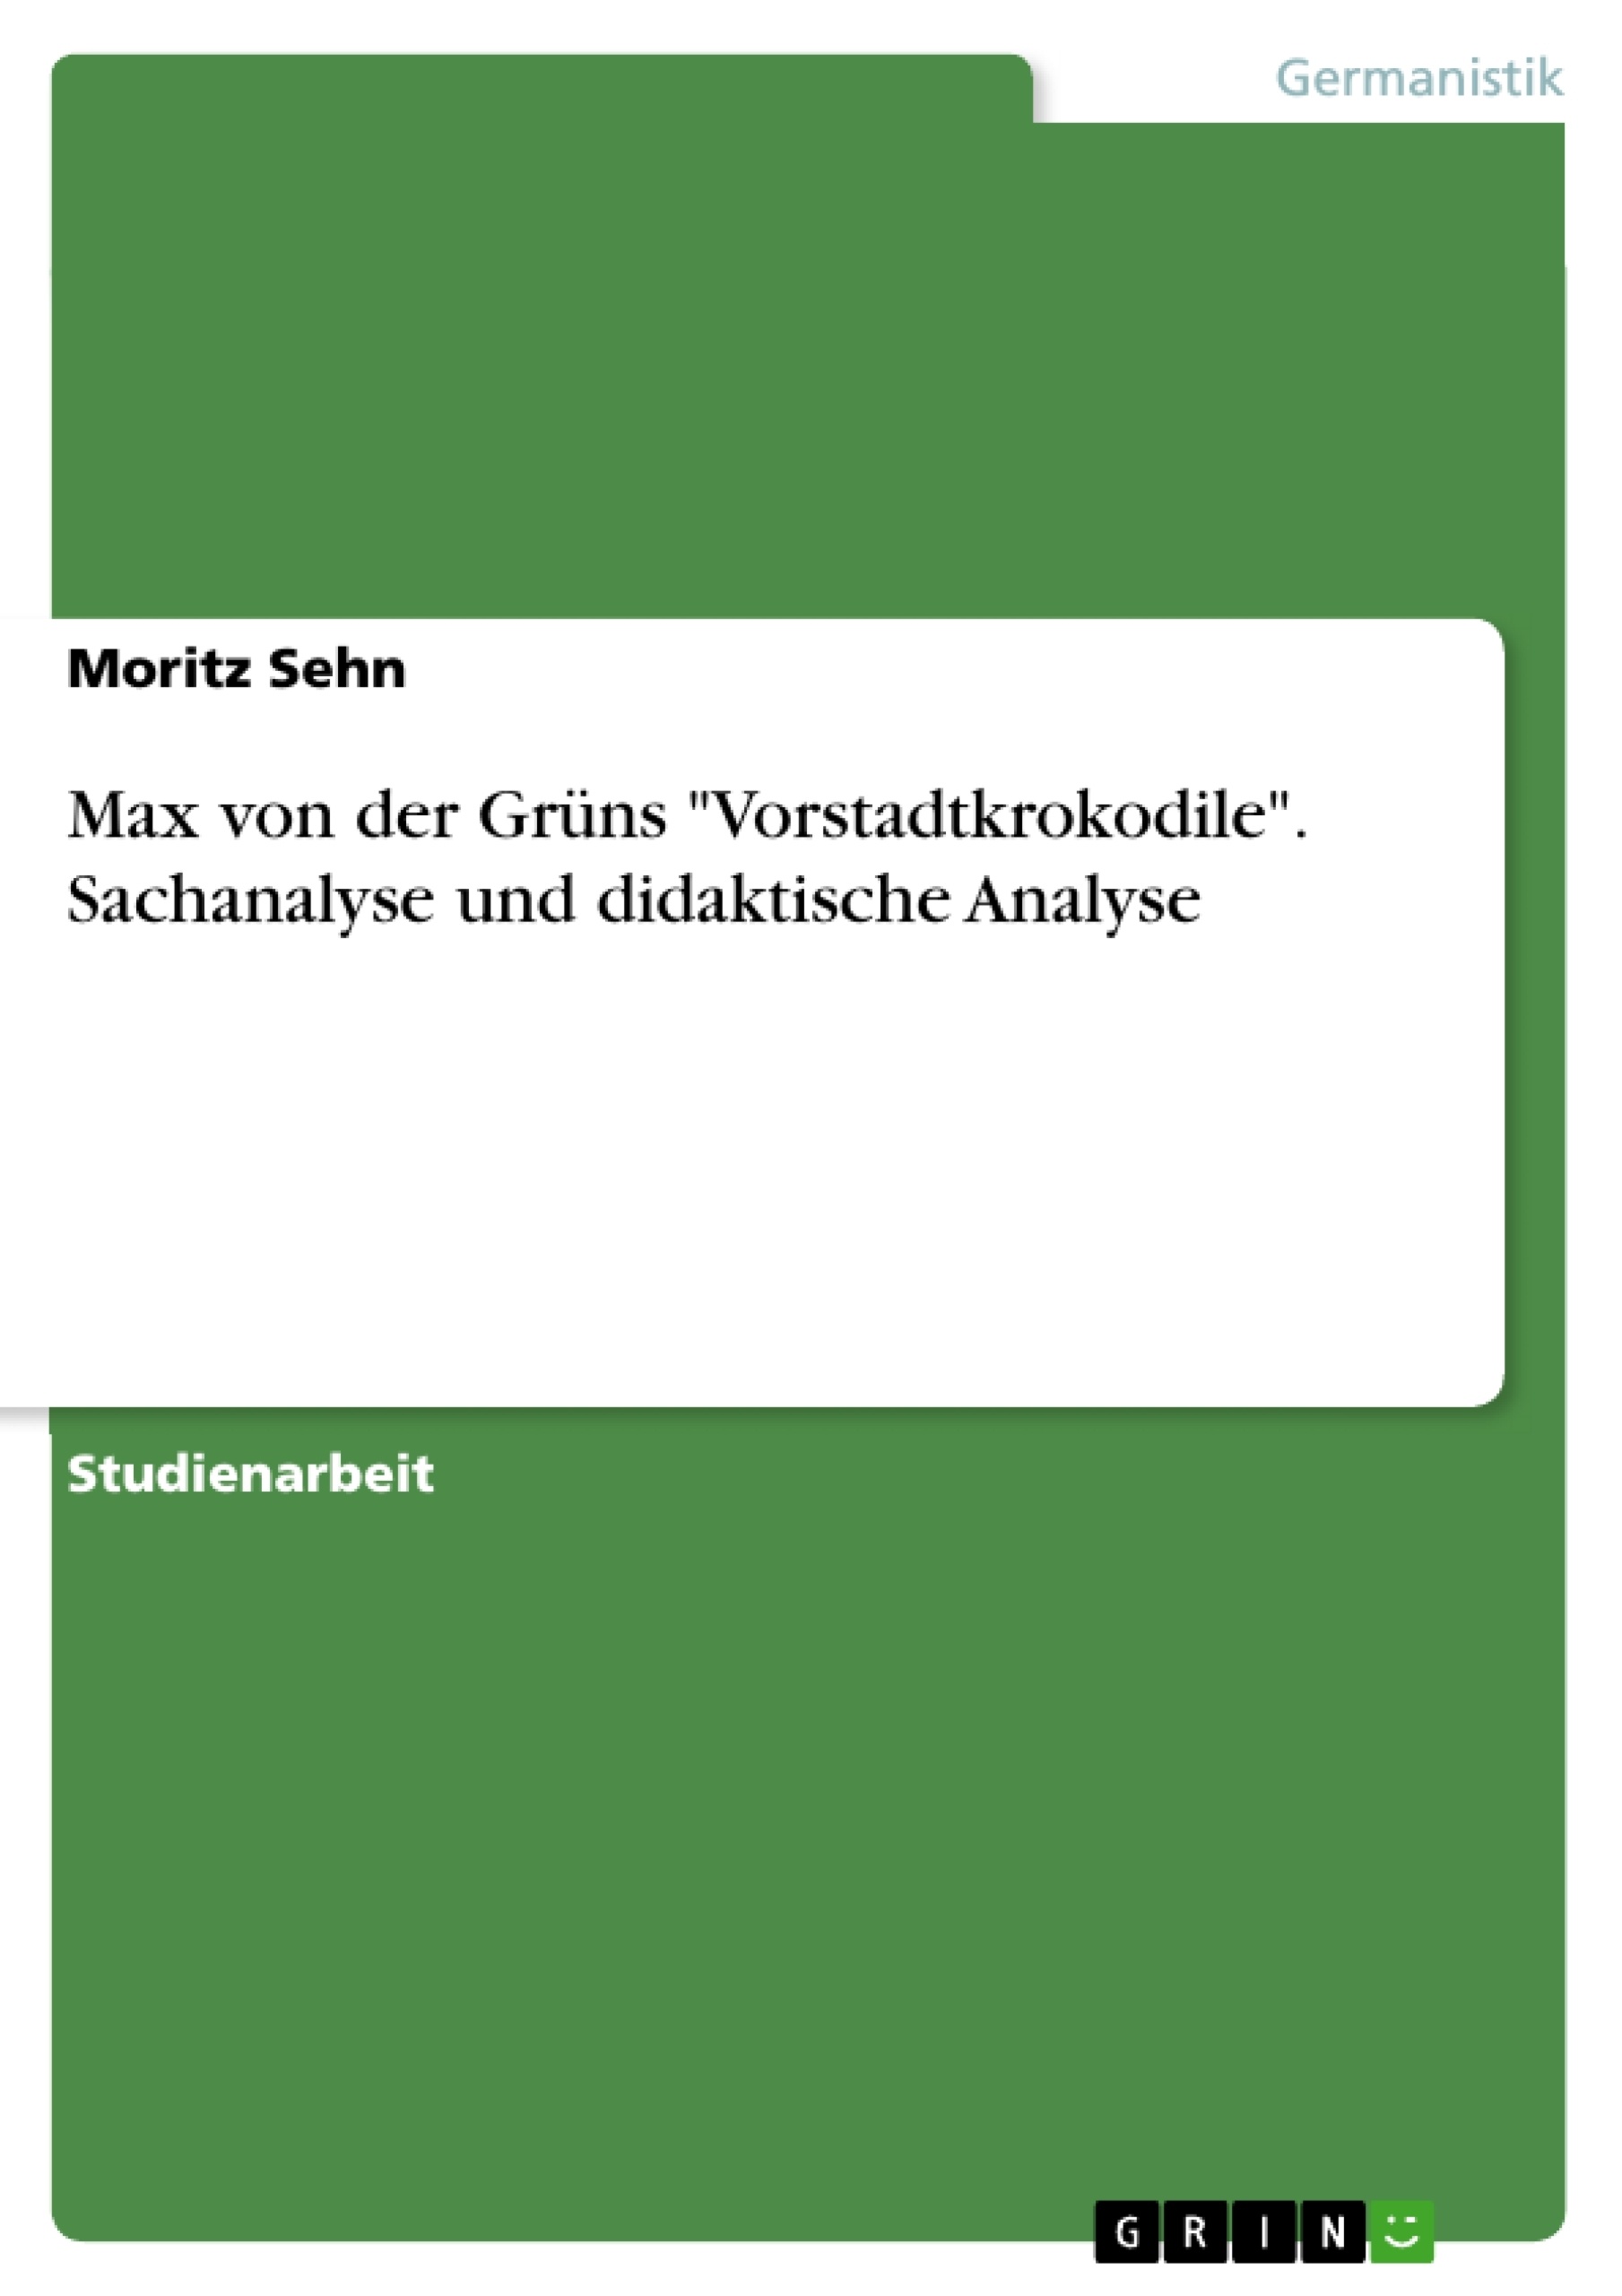 Title: Max von der Grüns "Vorstadtkrokodile". Sachanalyse und didaktische Analyse